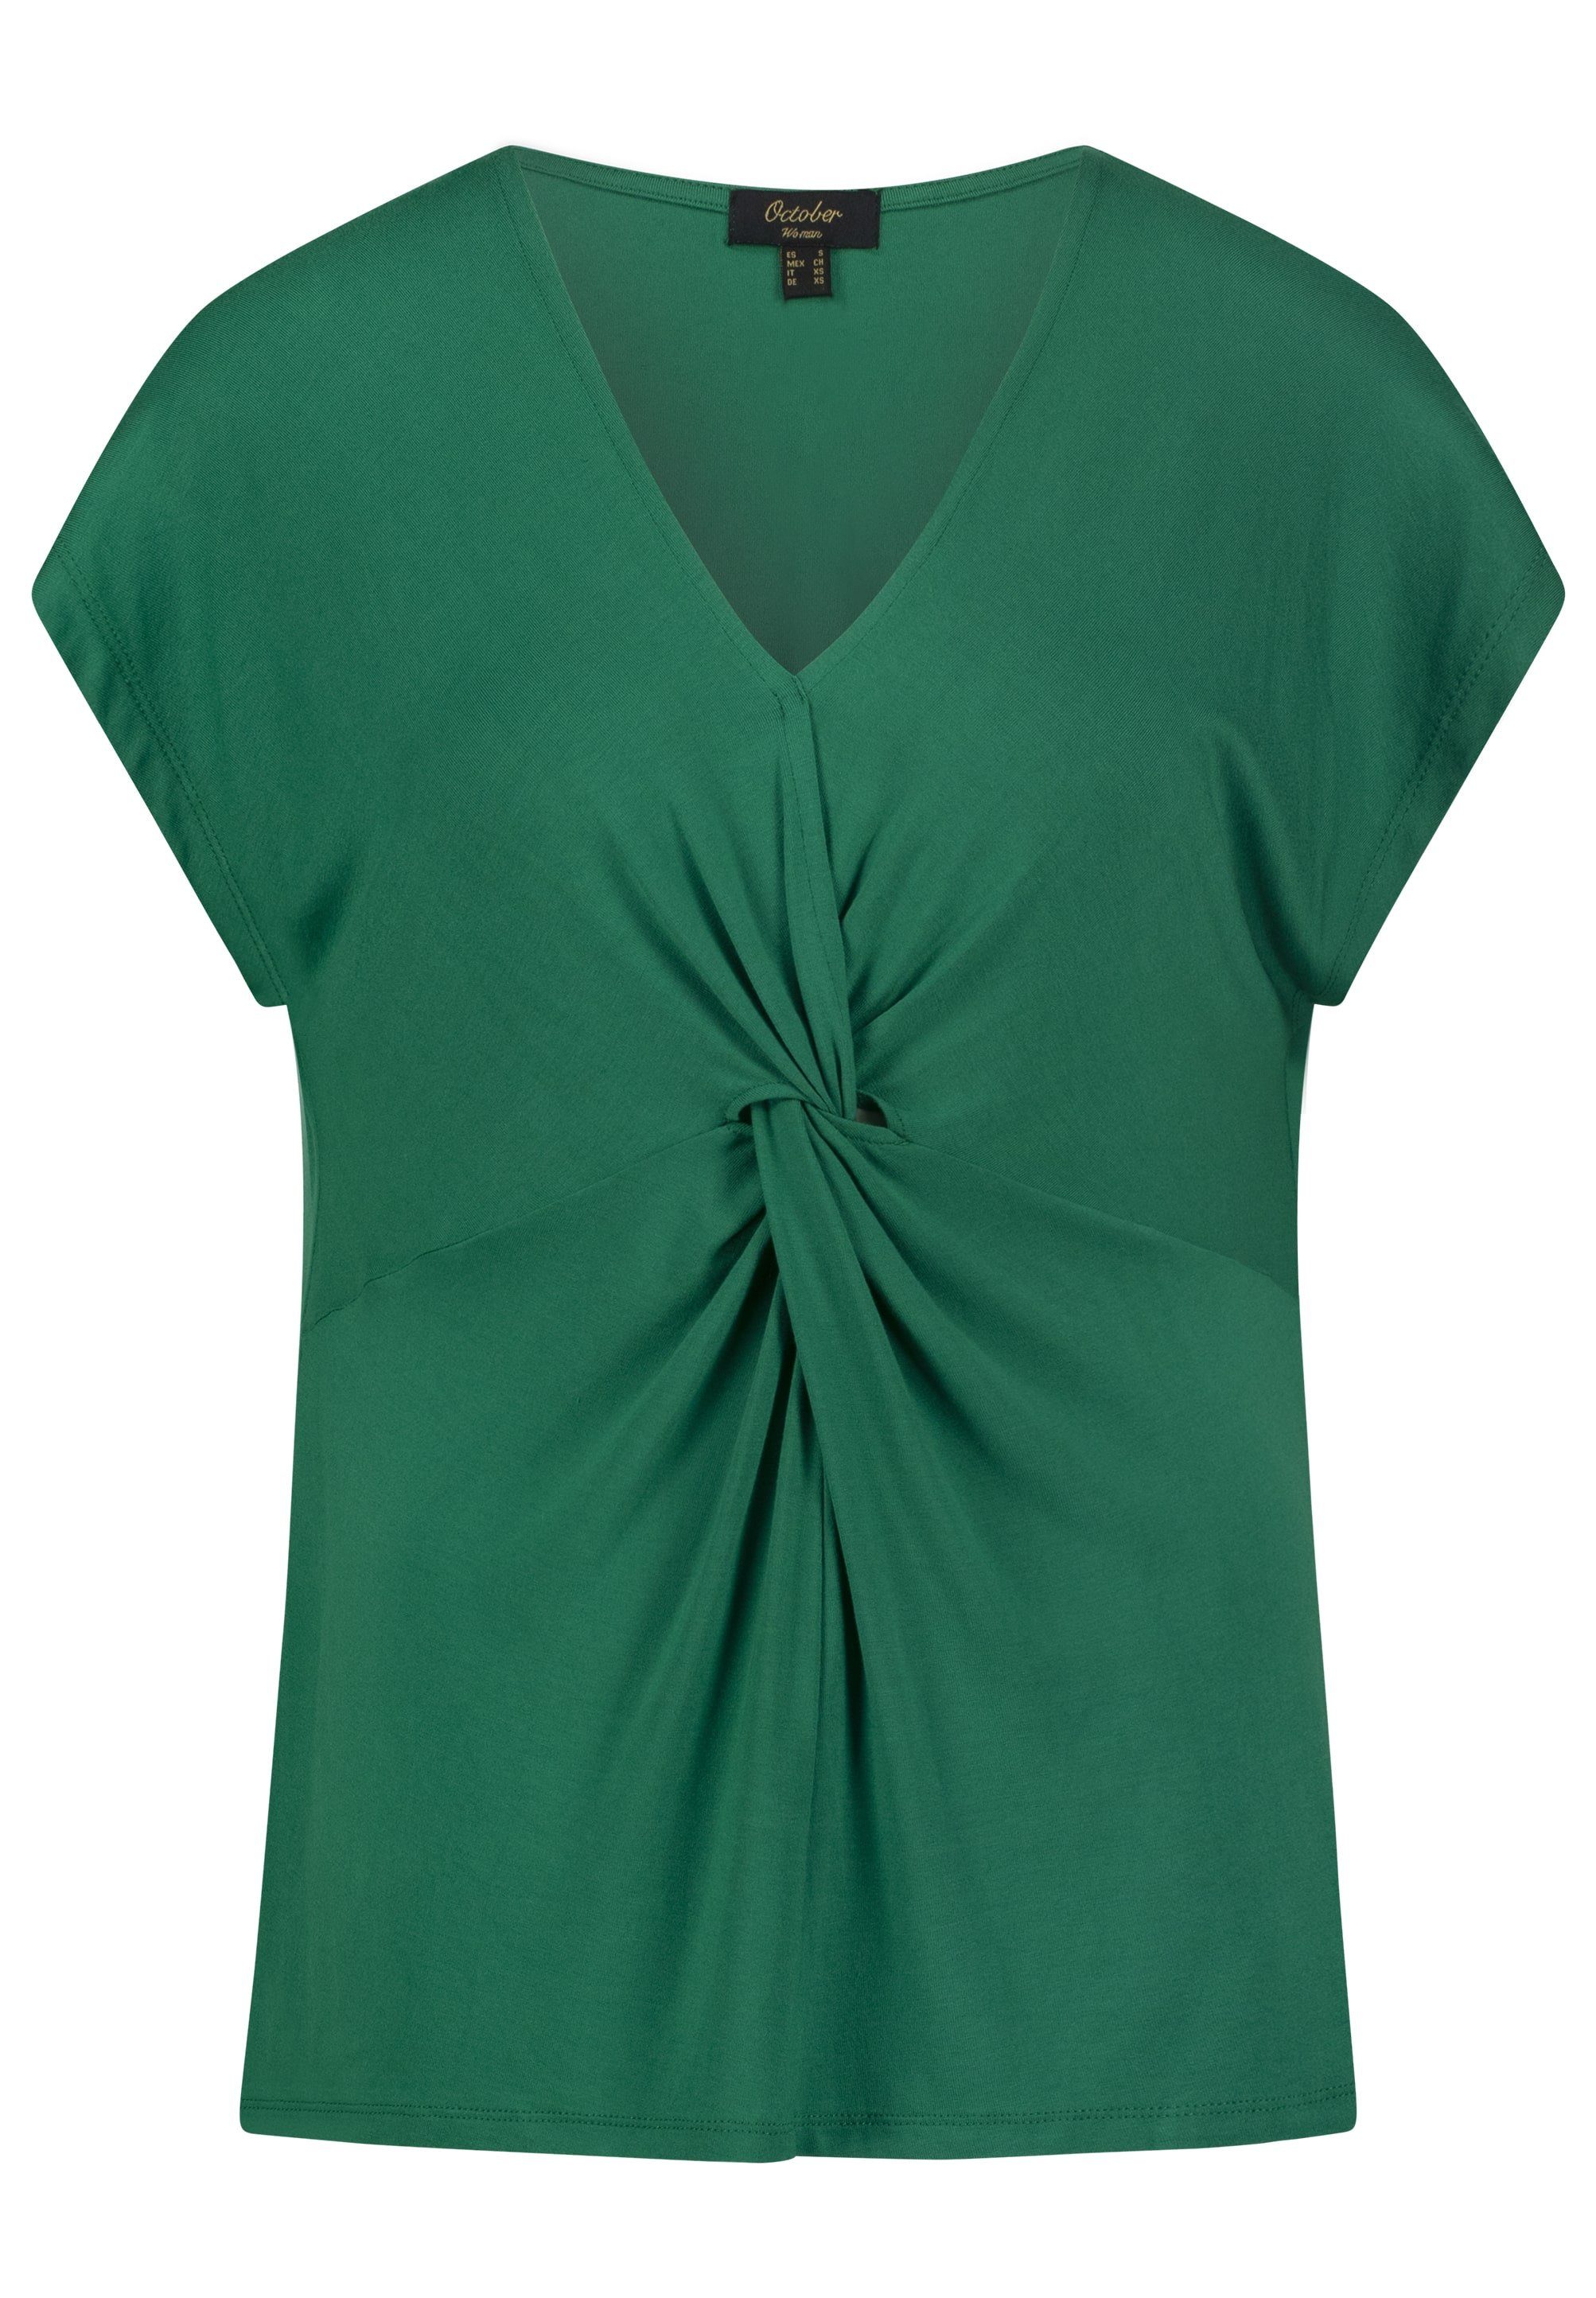 October T-Shirt im tollen grün Knoten-Design